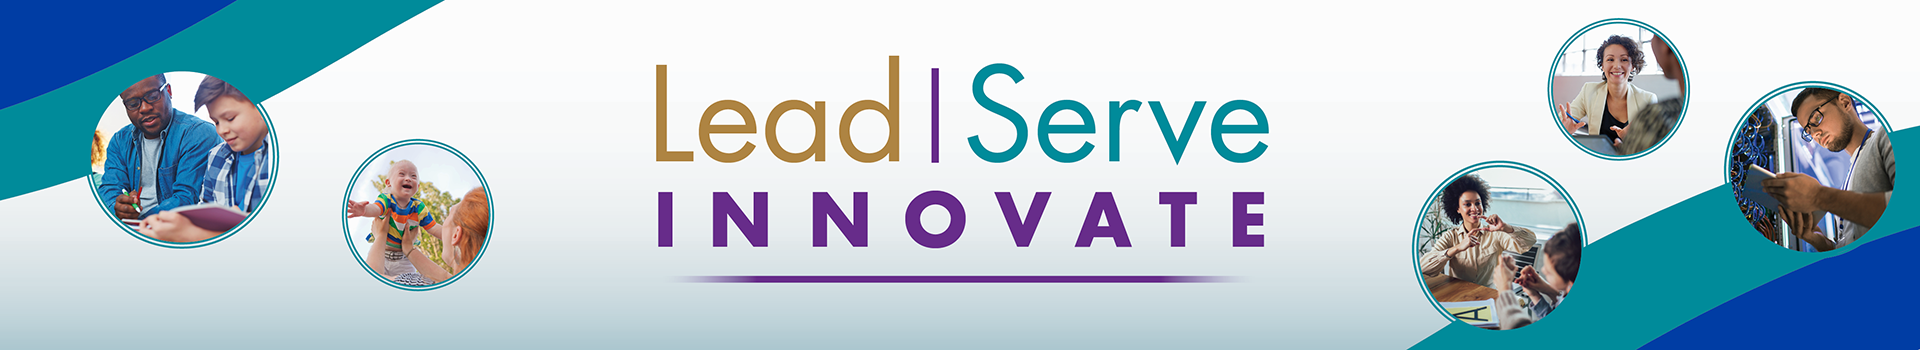 Lead. Serve. Innovate.